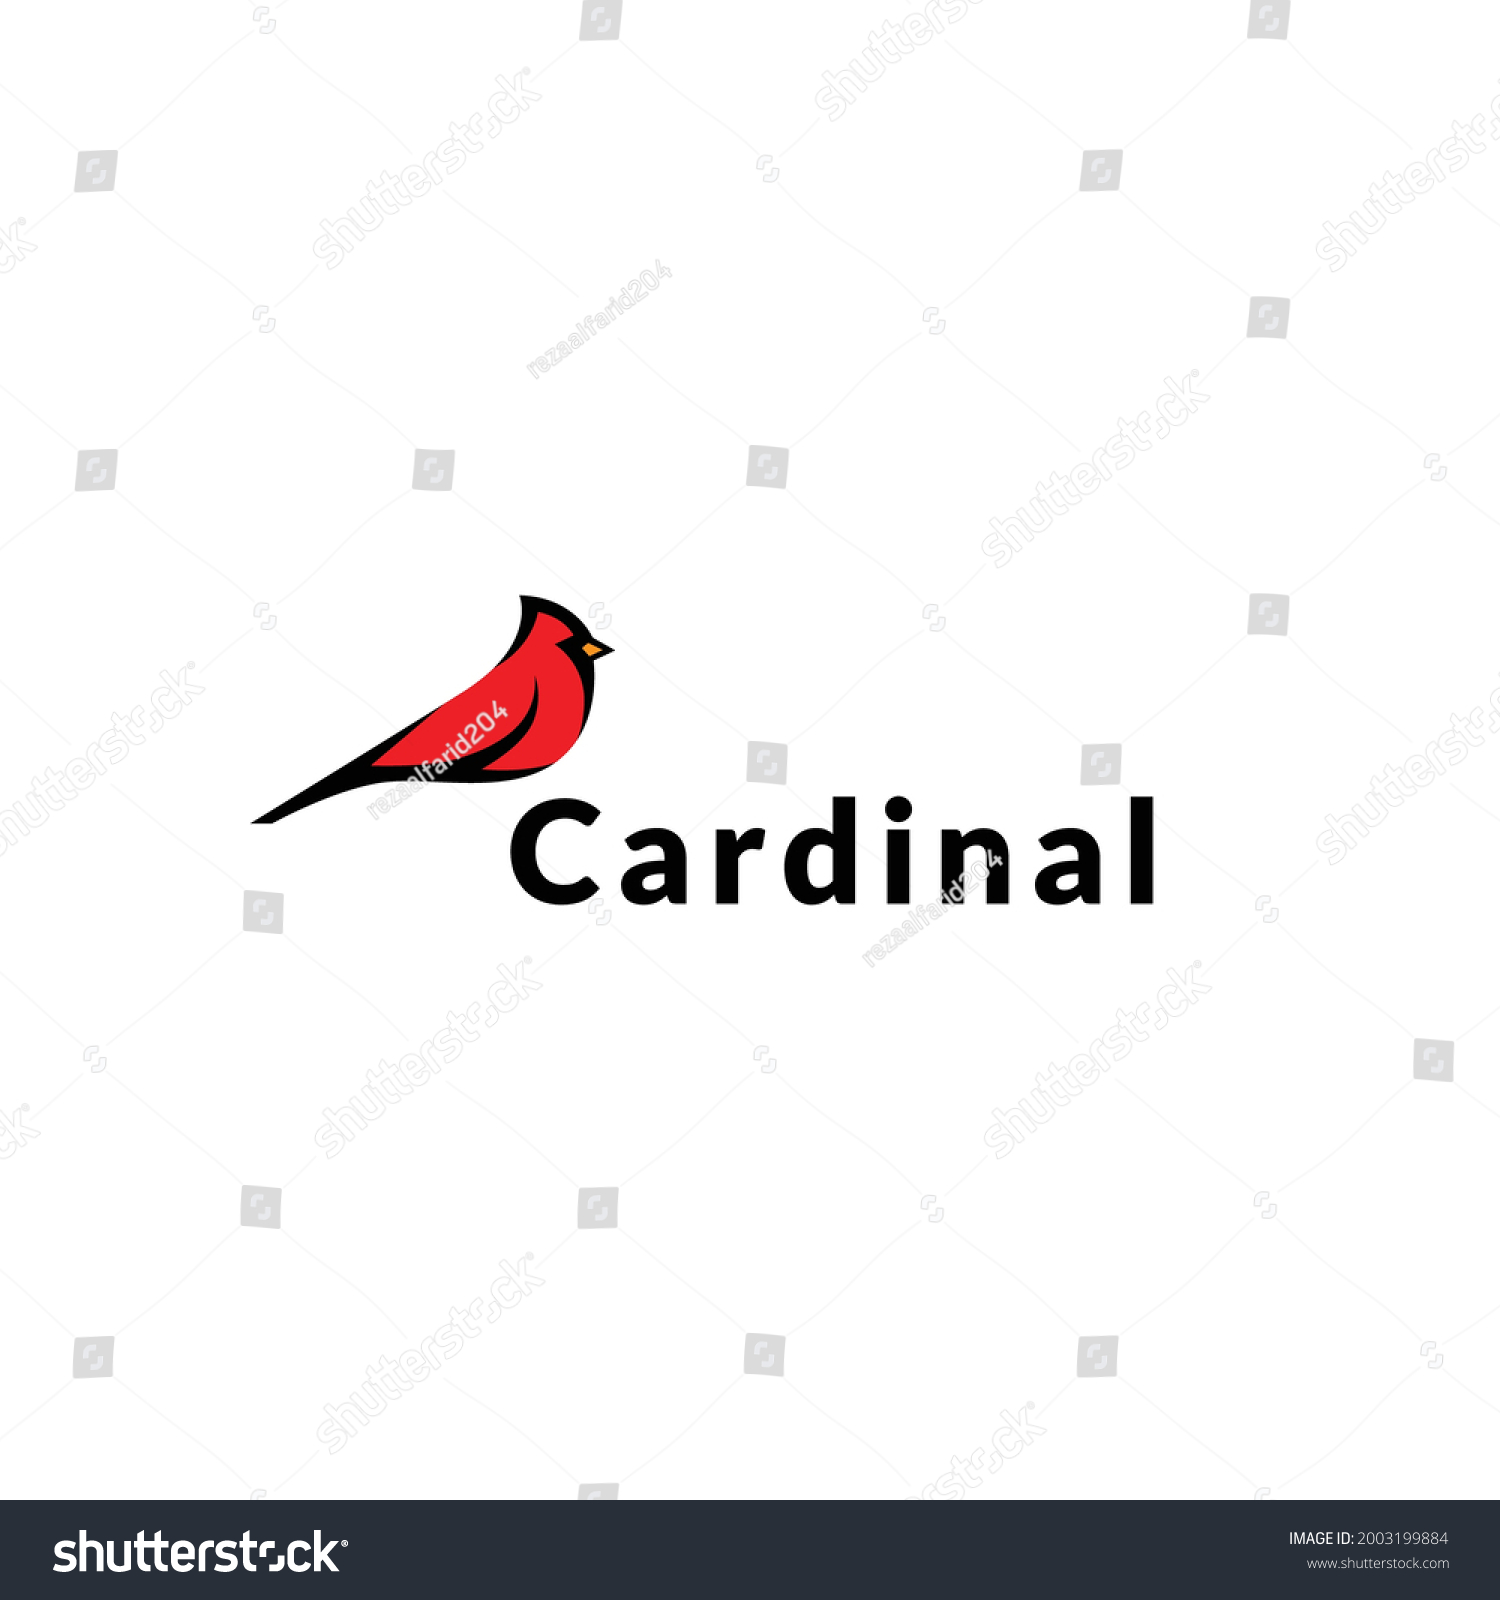 2,443 Cardinal logo Images, Stock Photos & Vectors | Shutterstock